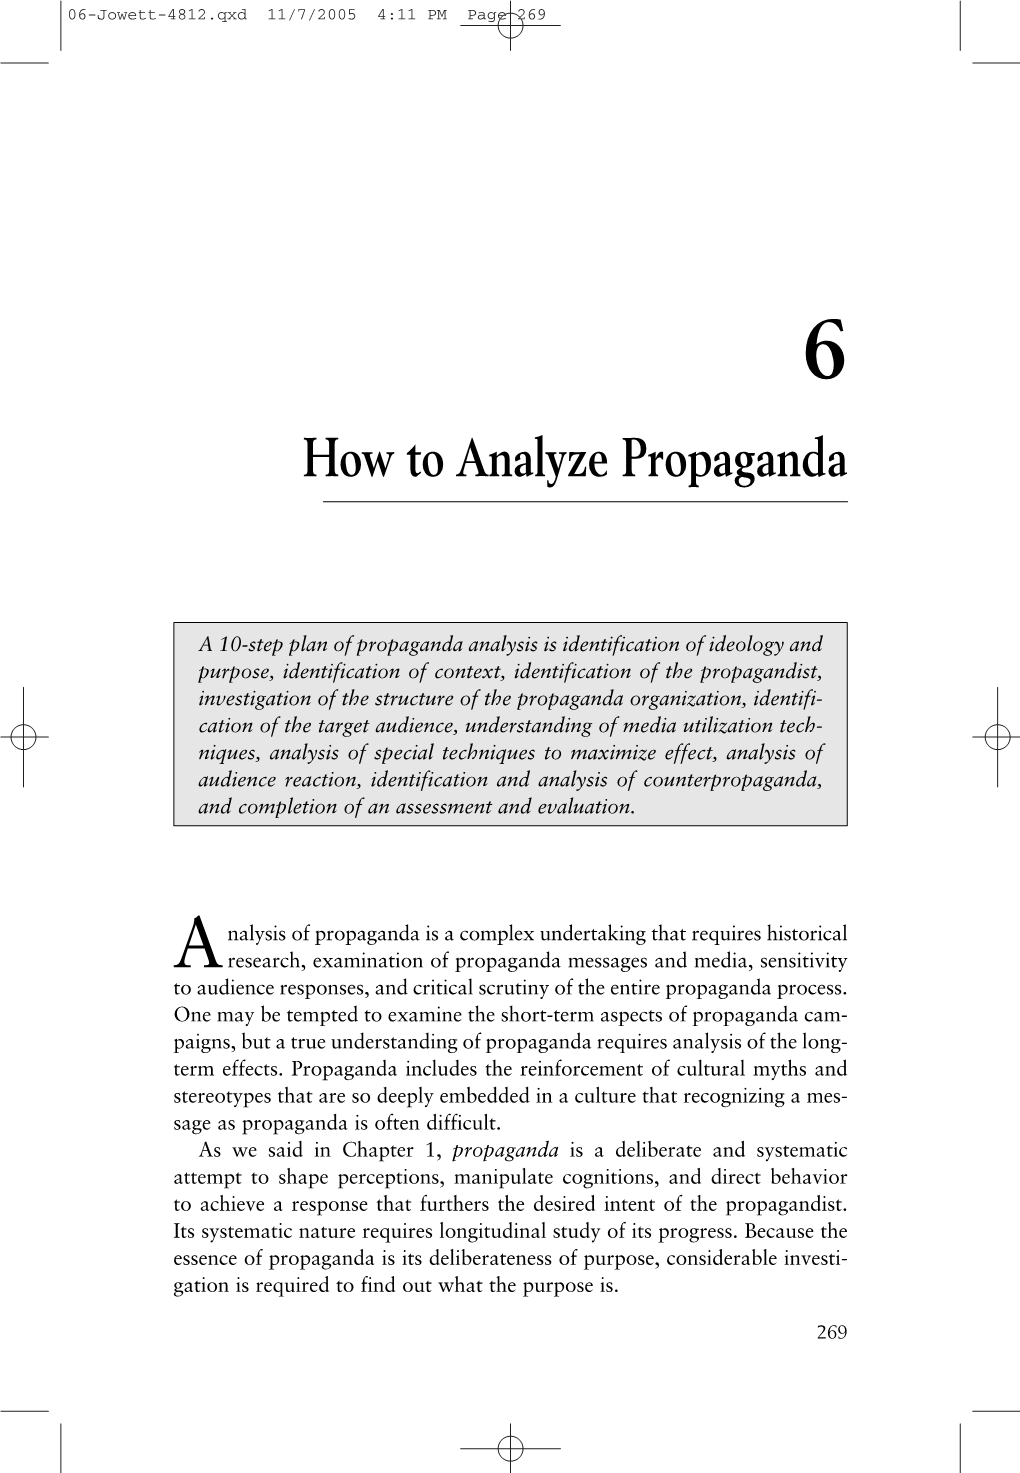 How to Analyze Propaganda